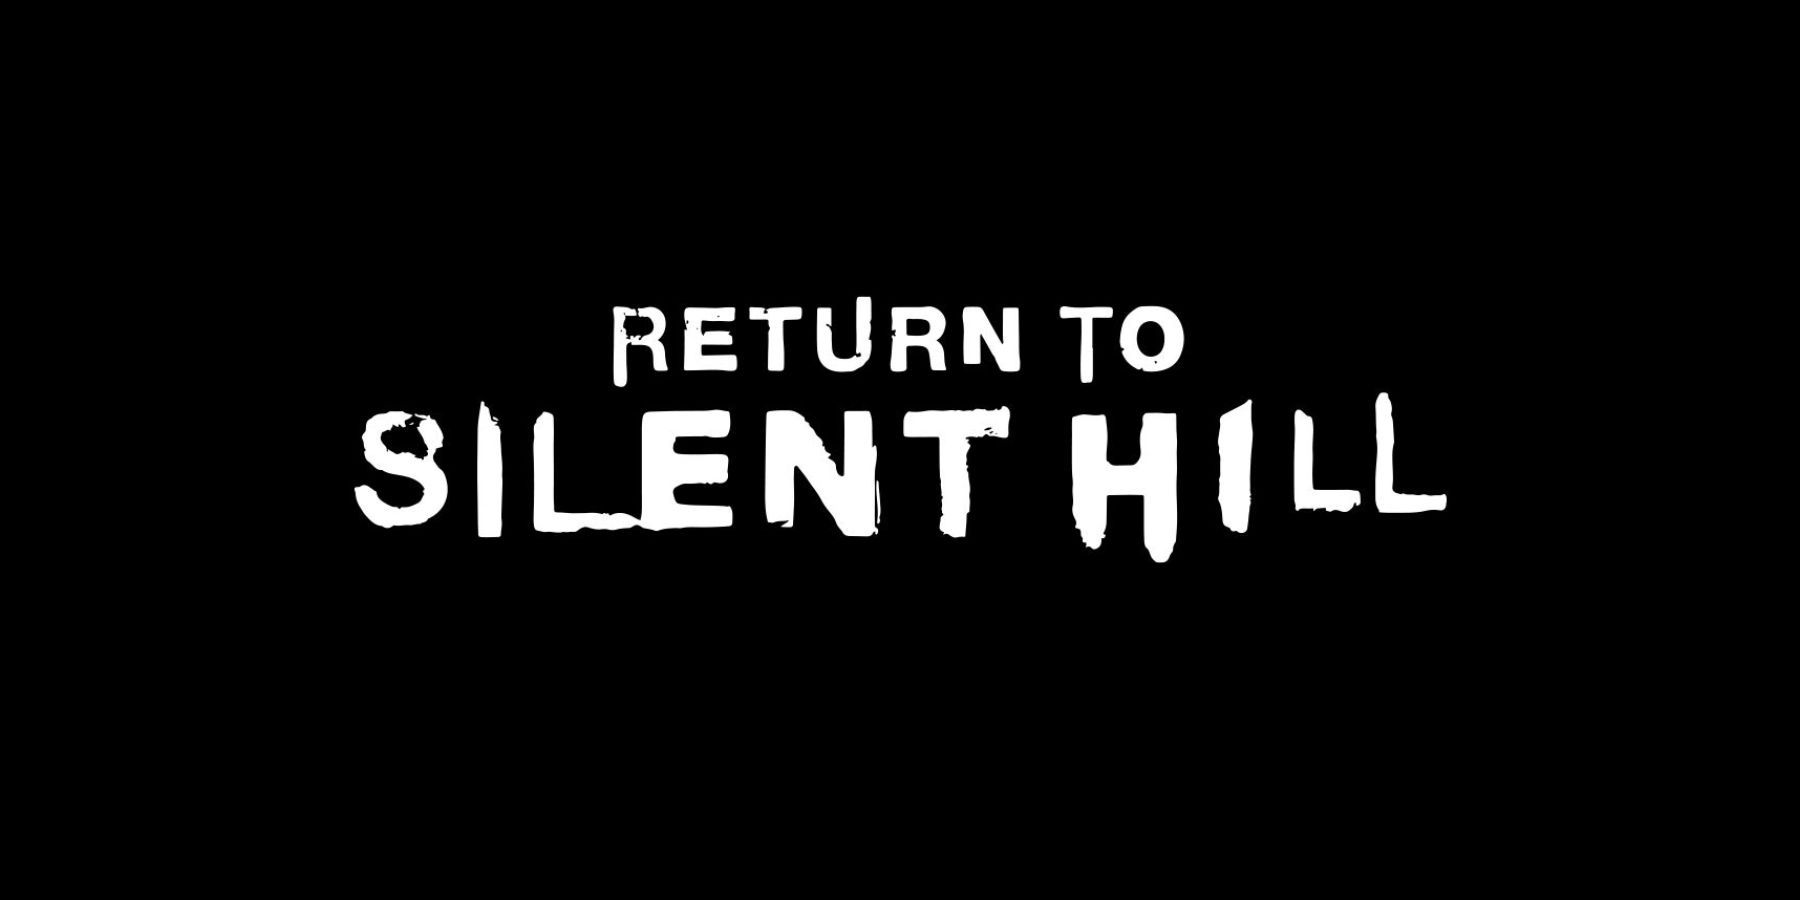 return to silent hill transmission trailer chrisophe gans movie film